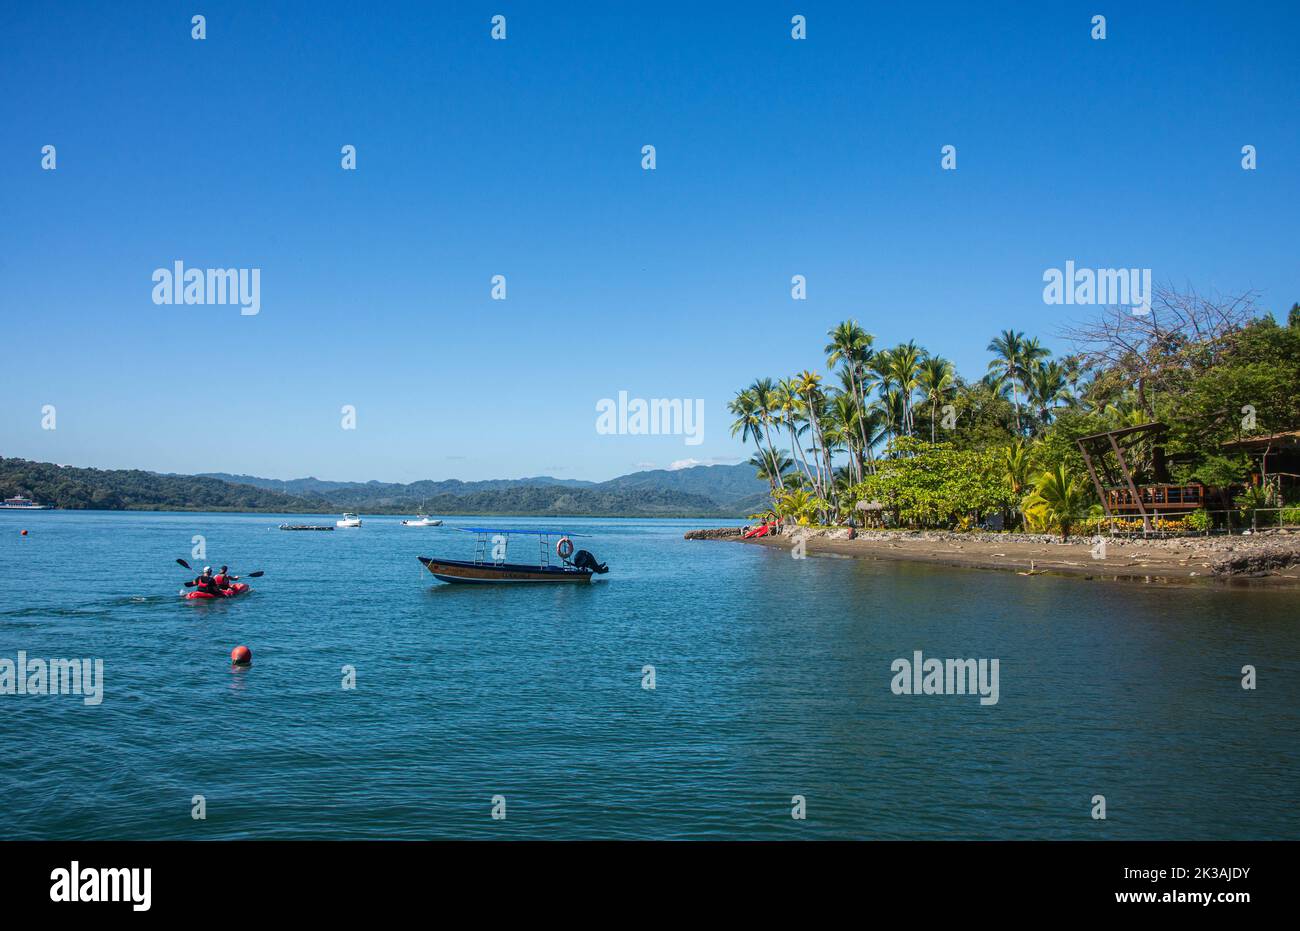 View of Isla Chiquita glamping resort, Isla Jesusita, Gulf of Nicoya, Costa Rica Stock Photo